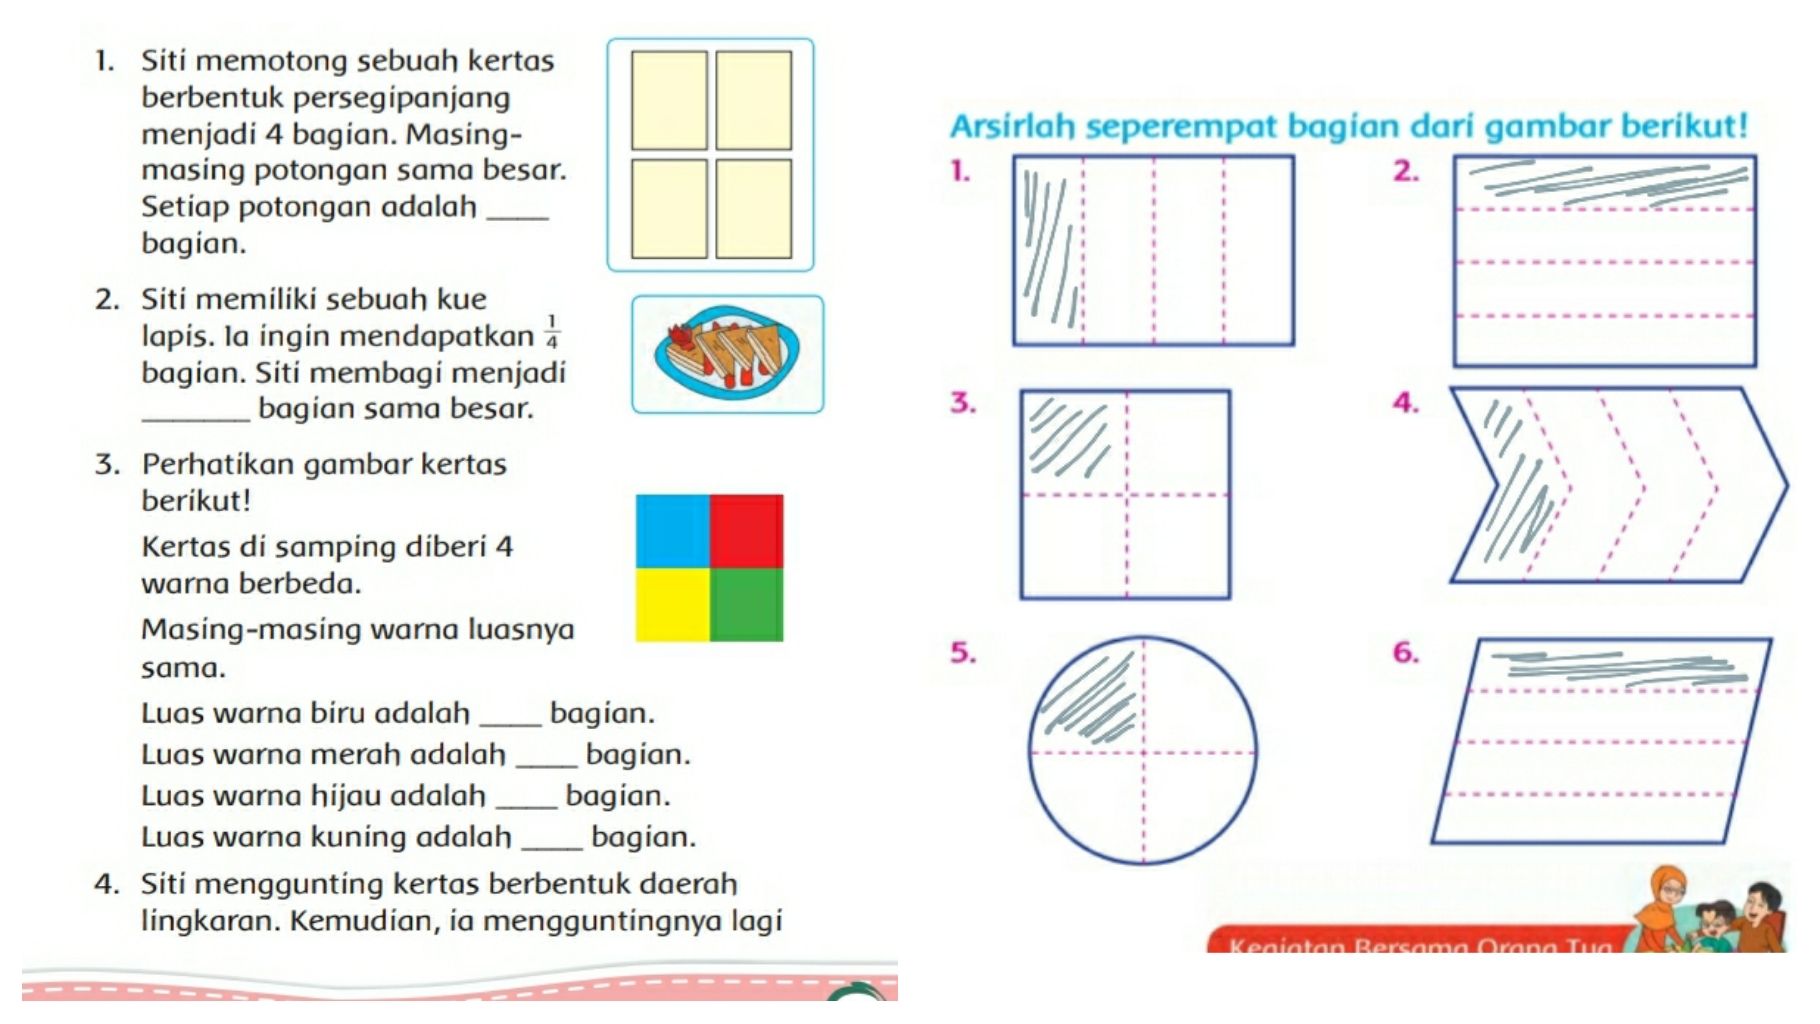 Kunci Jawaban Tema 7 Kelas 2 Halaman 26 27 28 29 30 31 32 33 34 Buku Tematik Subtema 1 Menyukai Puding Hijau Metro Lampung News